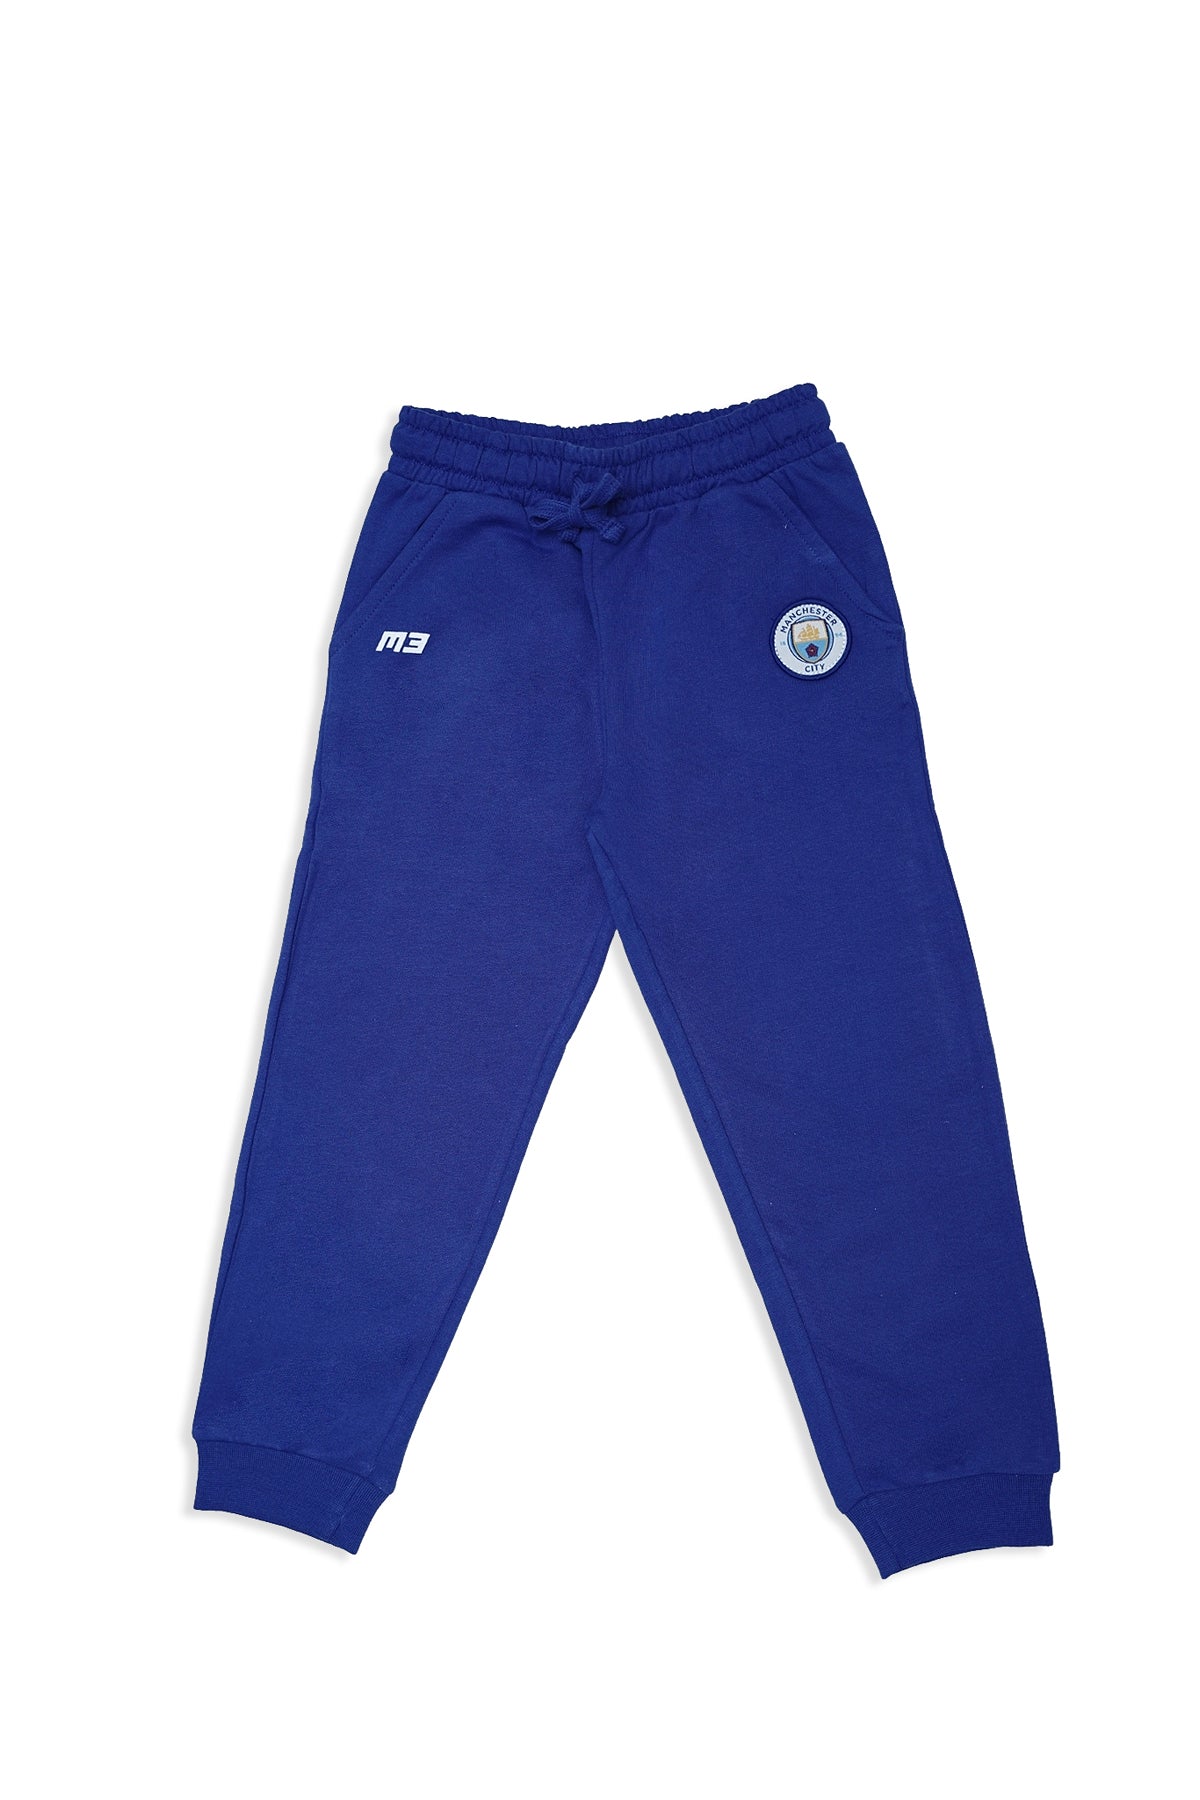 Athletic Pajamas (SW-GBL-033)